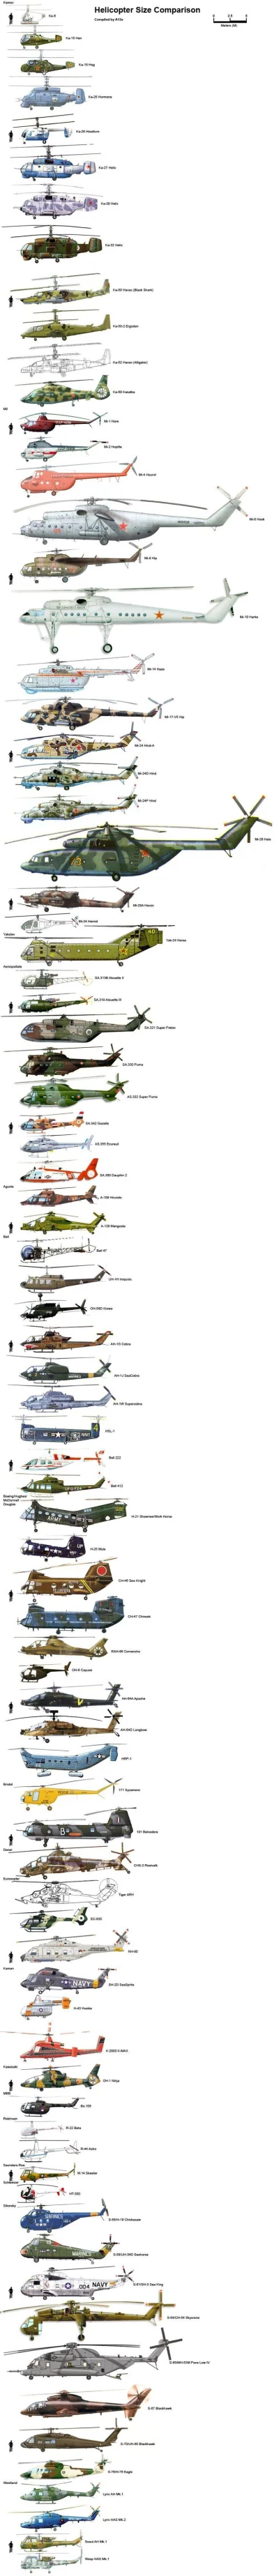 125procent - #helikopter #wojsko #ciekawostki 

Porównanie wielości różnych helikop...